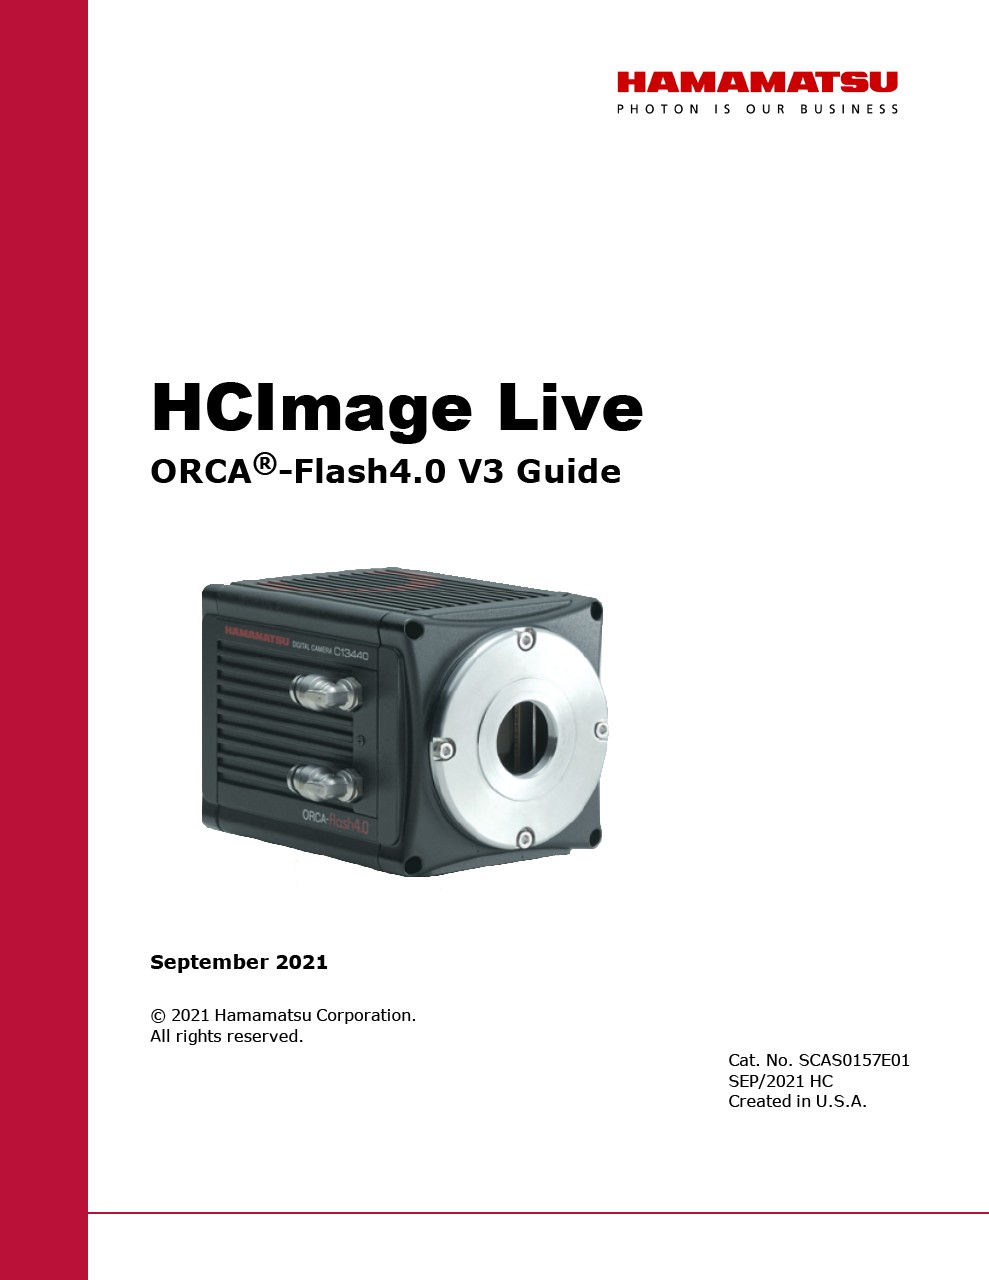 HCImage Live ORCA-Flash4.0 V3 Guide